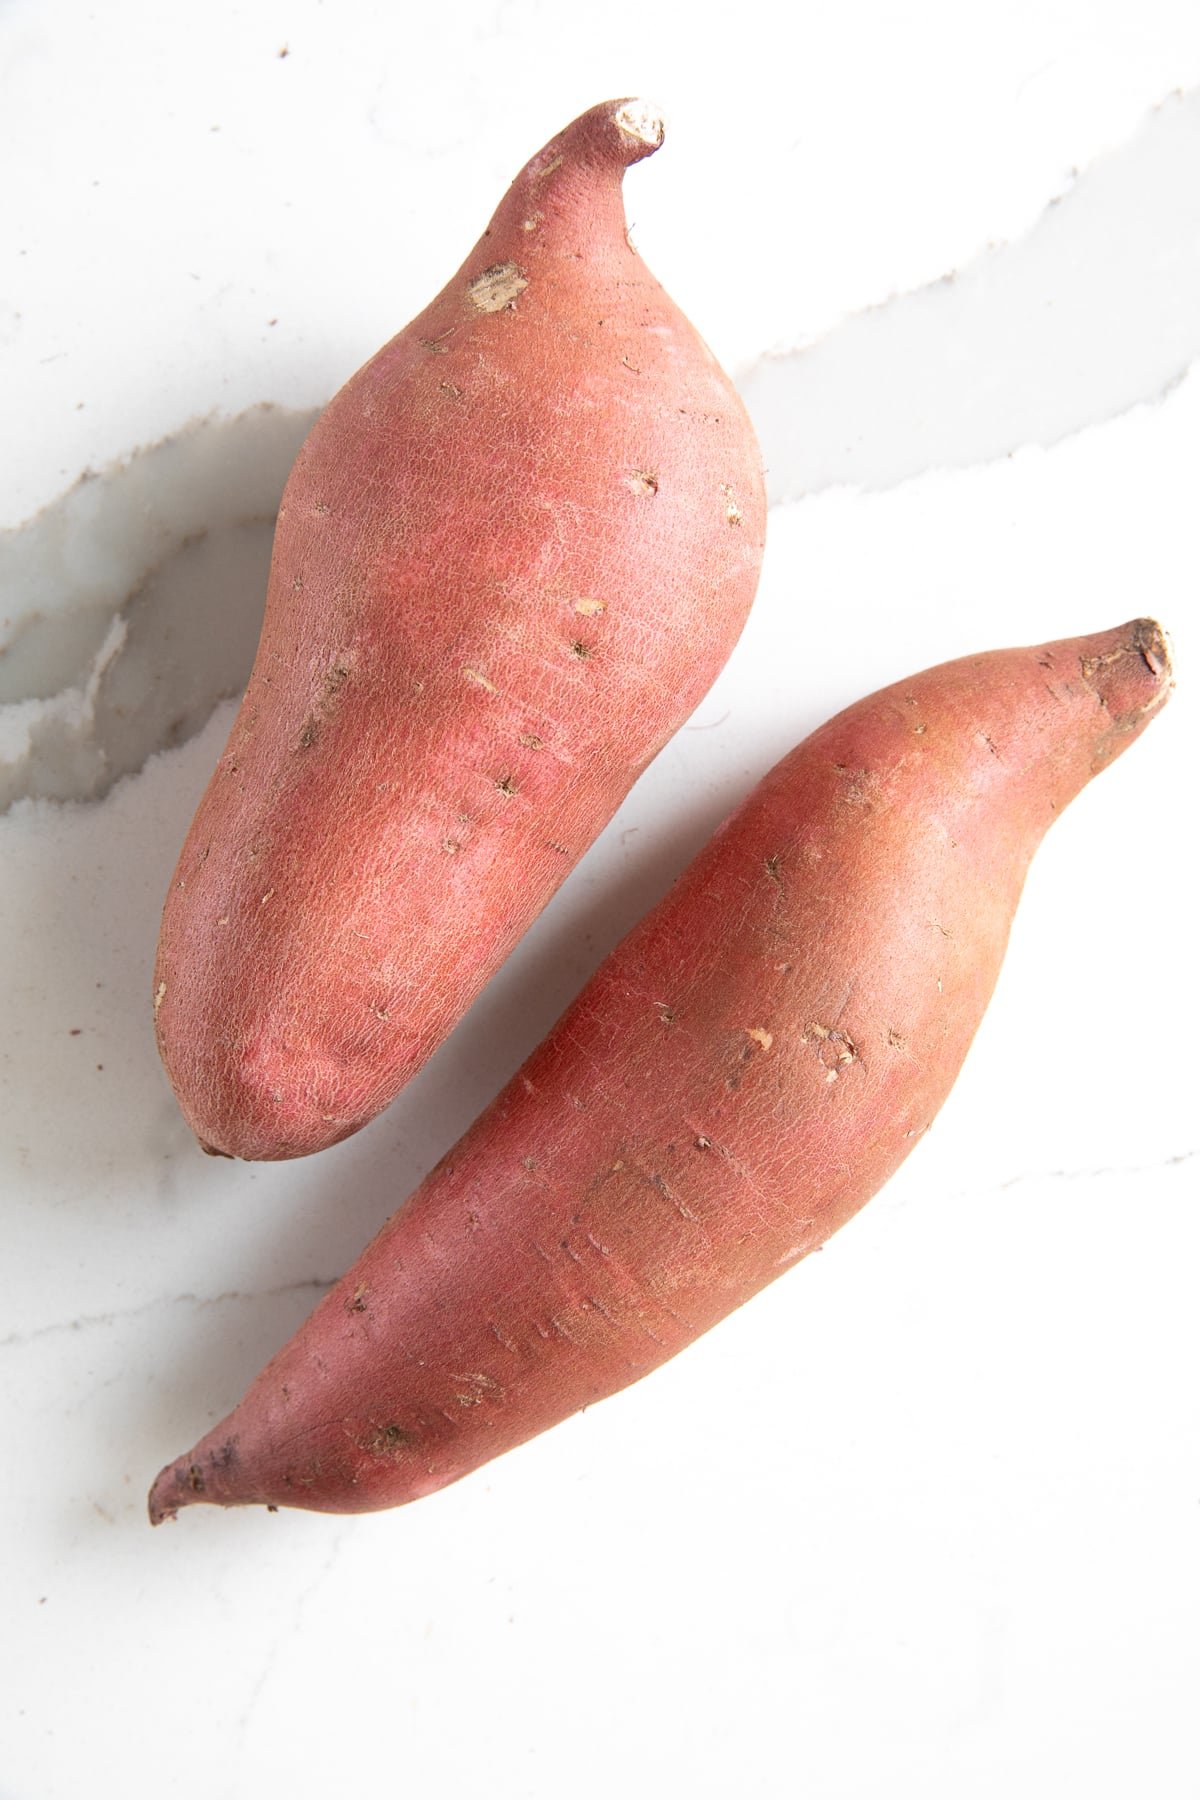 Two uncooked sweet potatoes.